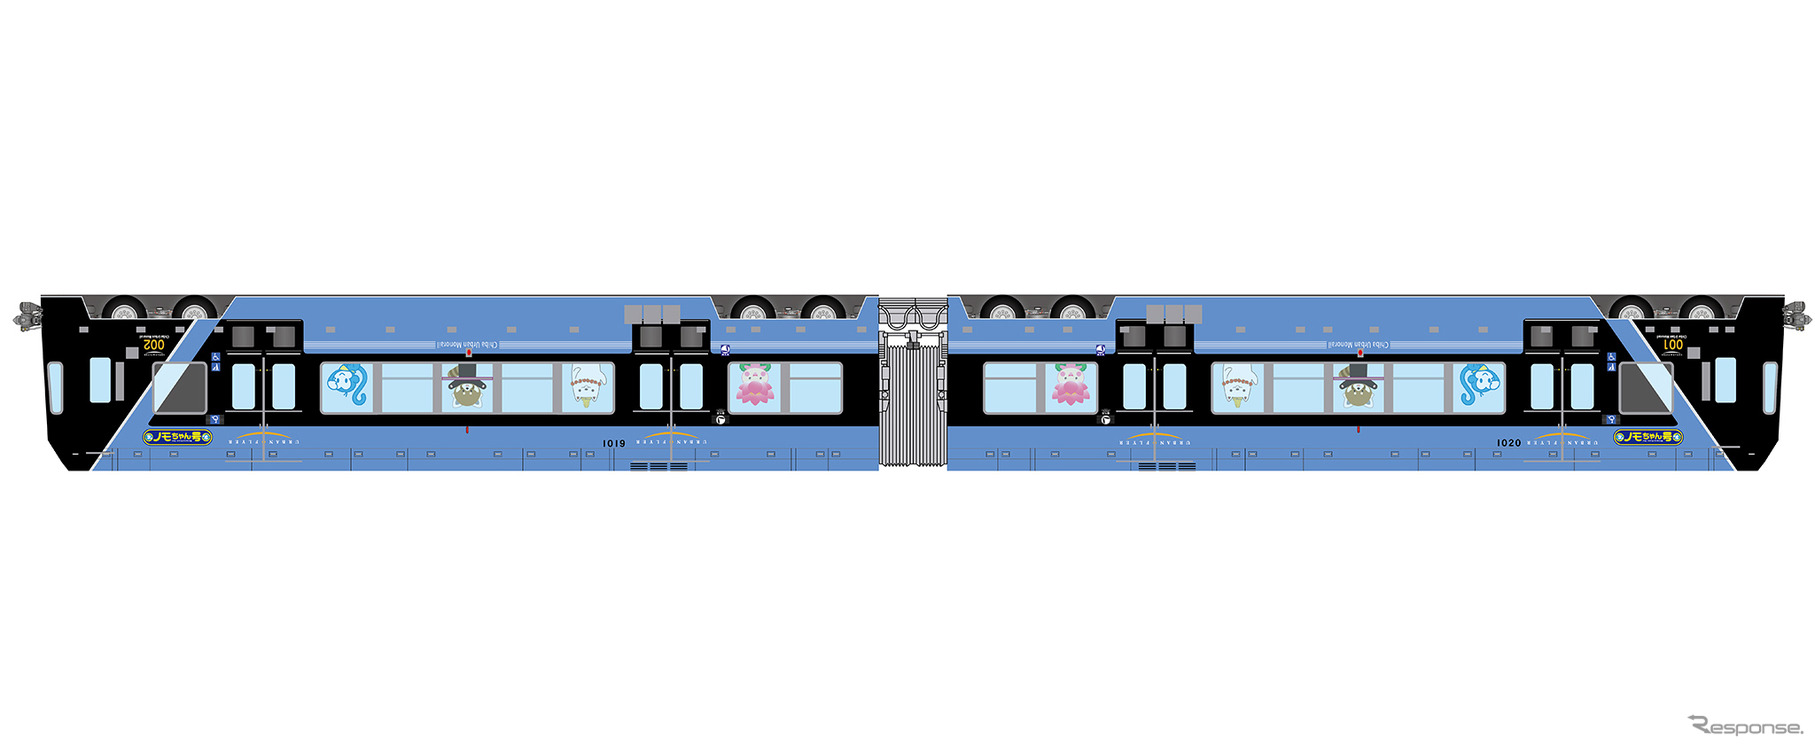 1月15日から運行される「ノモちゃん号」のイメージ。千葉モノレールのマスコットキャラクター「モノちゃん」などを逆さまにして車体を装飾する。